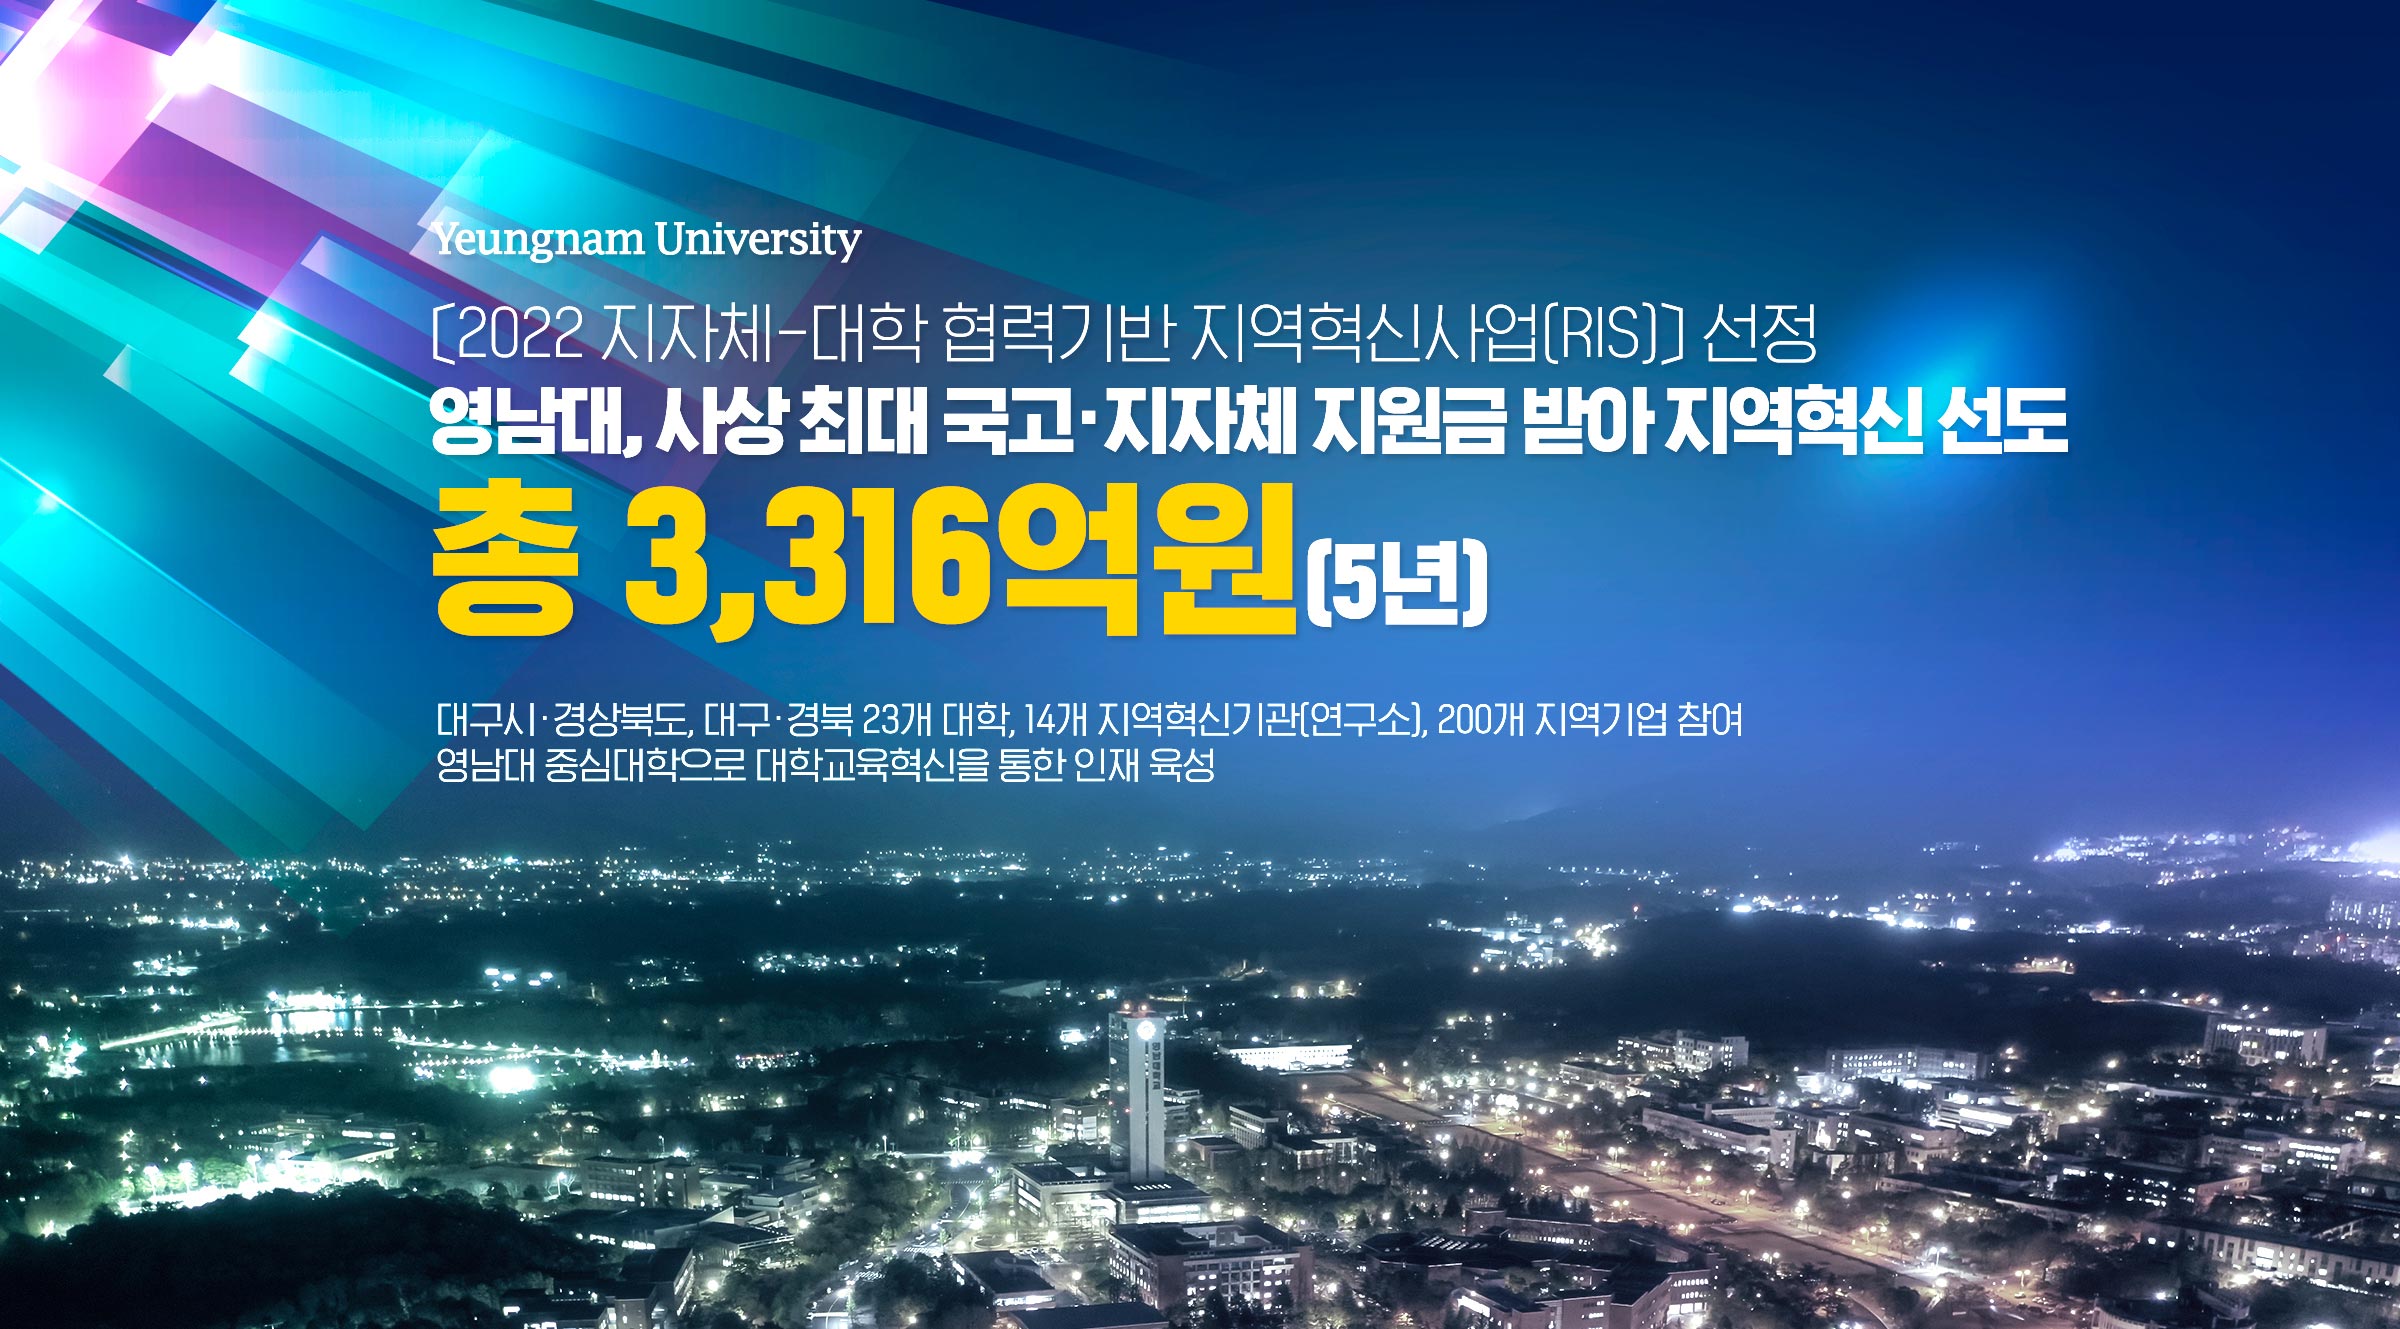 Yeungnam University[2022지자체-대학 협력기반 지역혁신사업(RIS)] 선정  영남대, 사상 최대 국고·지자체 지원금 받아 지역혁신 선도 총 3,316억원(5년) 대구시·경상북도, 대구·경북 23개 대학, 14개 지역혁신기관[연구소], 200개 지역기업 참여 영남대 중심대학으로 대학교육혁신을 통한 인재 육성